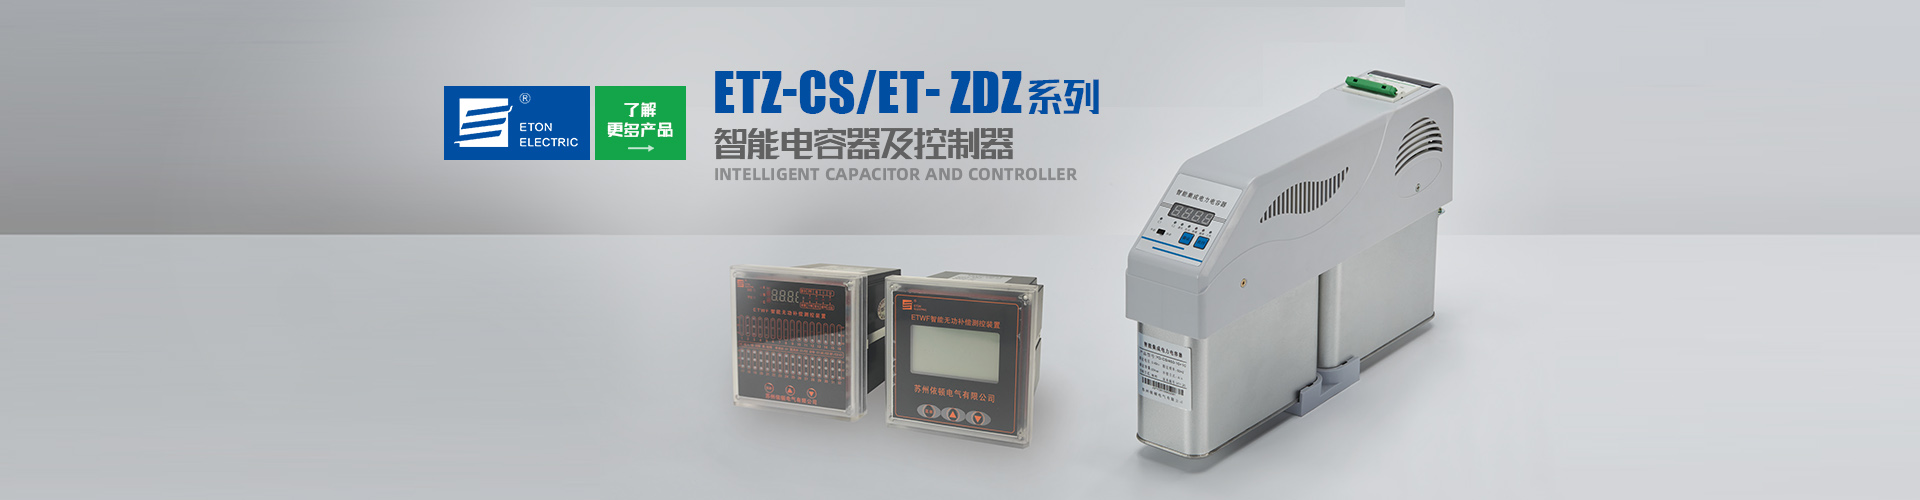 太阳集团tyc151(中国)官方网站_产品5790